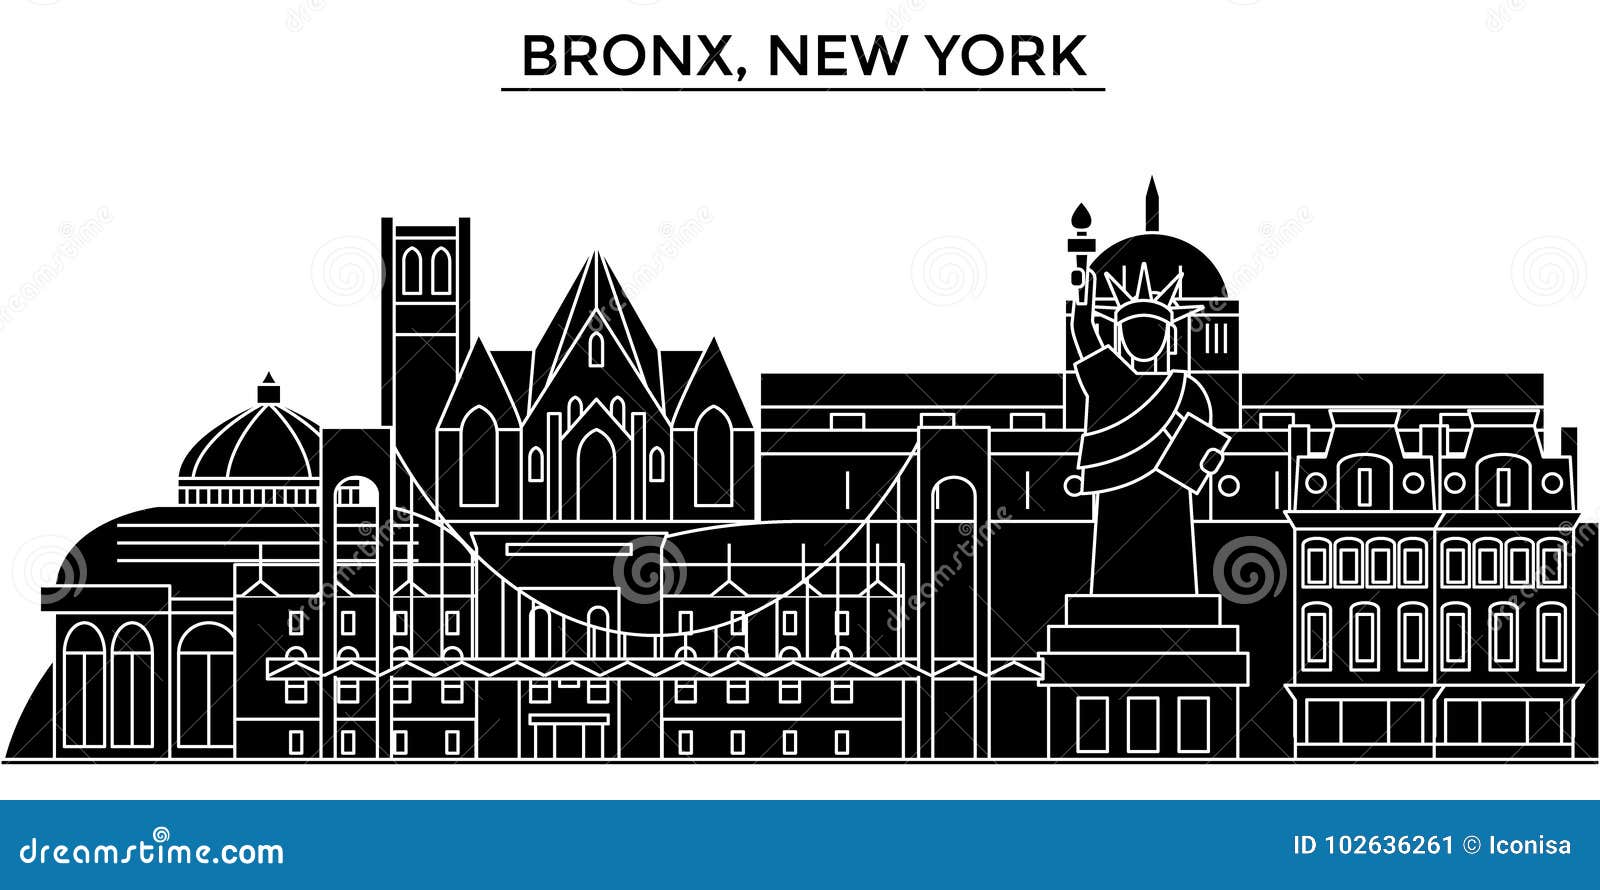 Οι ΗΠΑ, Bronx, διανυσματικός ορίζοντας πόλεων αρχιτεκτονικής της Νέας Υόρκης, εικονική παράσταση πόλης ταξιδιού με τα ορόσημα, κτ. Οι ΗΠΑ, Bronx, διανυσματικός ορίζοντας πόλεων αρχιτεκτονικής της Νέας Υόρκης, μαύρη εικονική παράσταση πόλης με τα ορόσημα, απομόνωσαν τις θέες στο υπόβαθρο